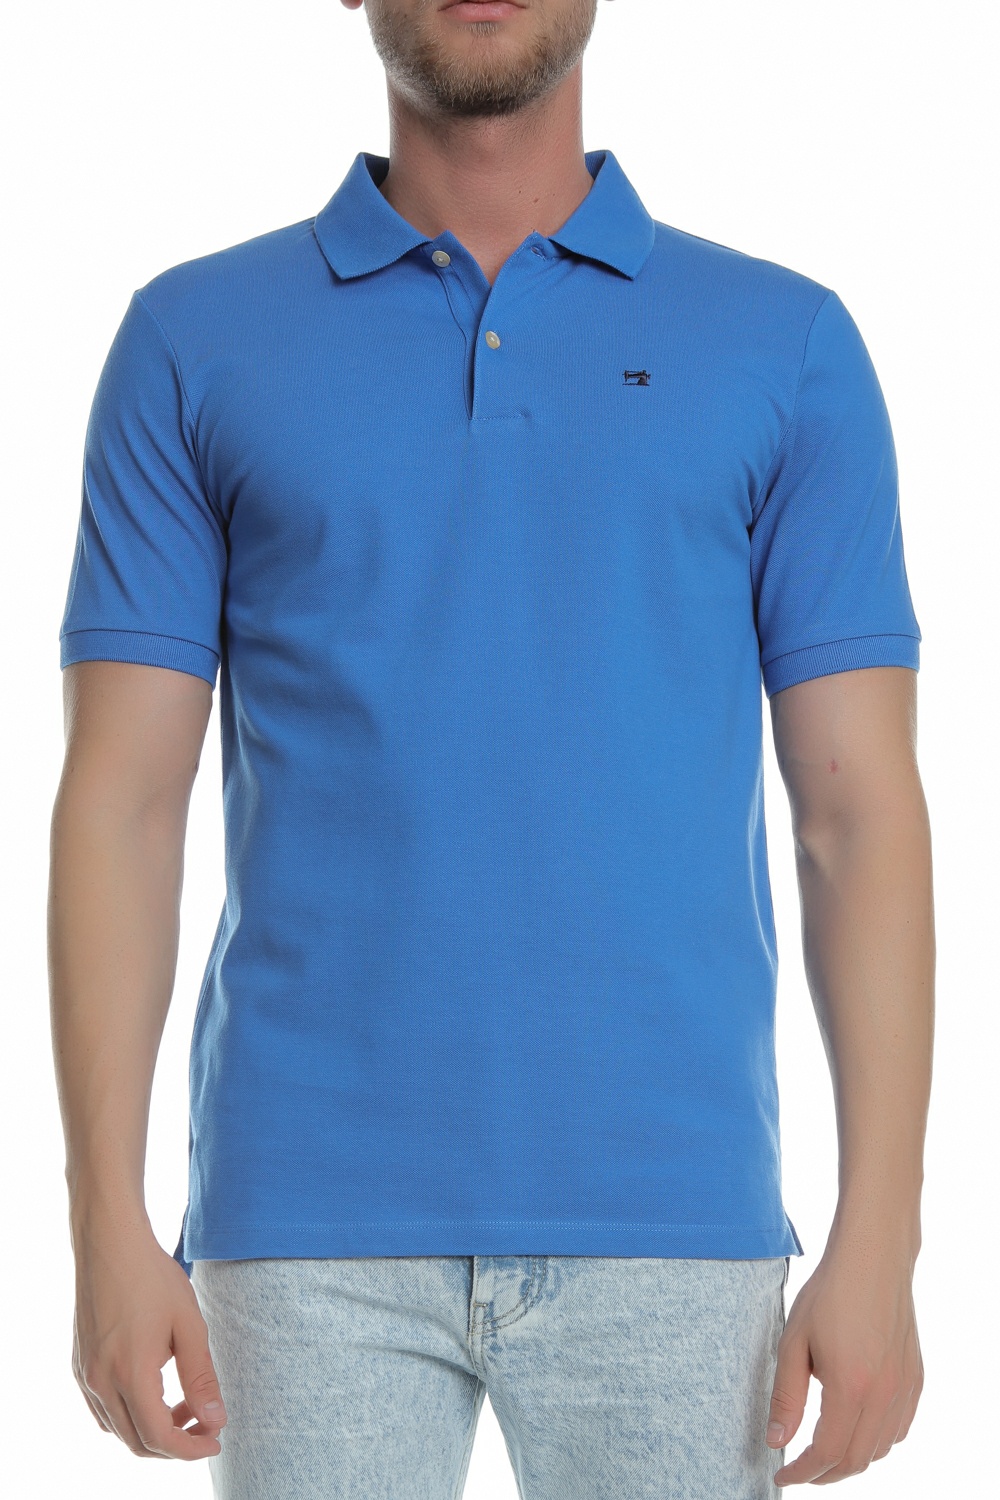 Ανδρικά/Ρούχα/Μπλούζες/Πόλο SCOTCH & SODA - Ανδρική κοντομάνικη πόλο μπλούζα SCOTCH & SODA μπλε